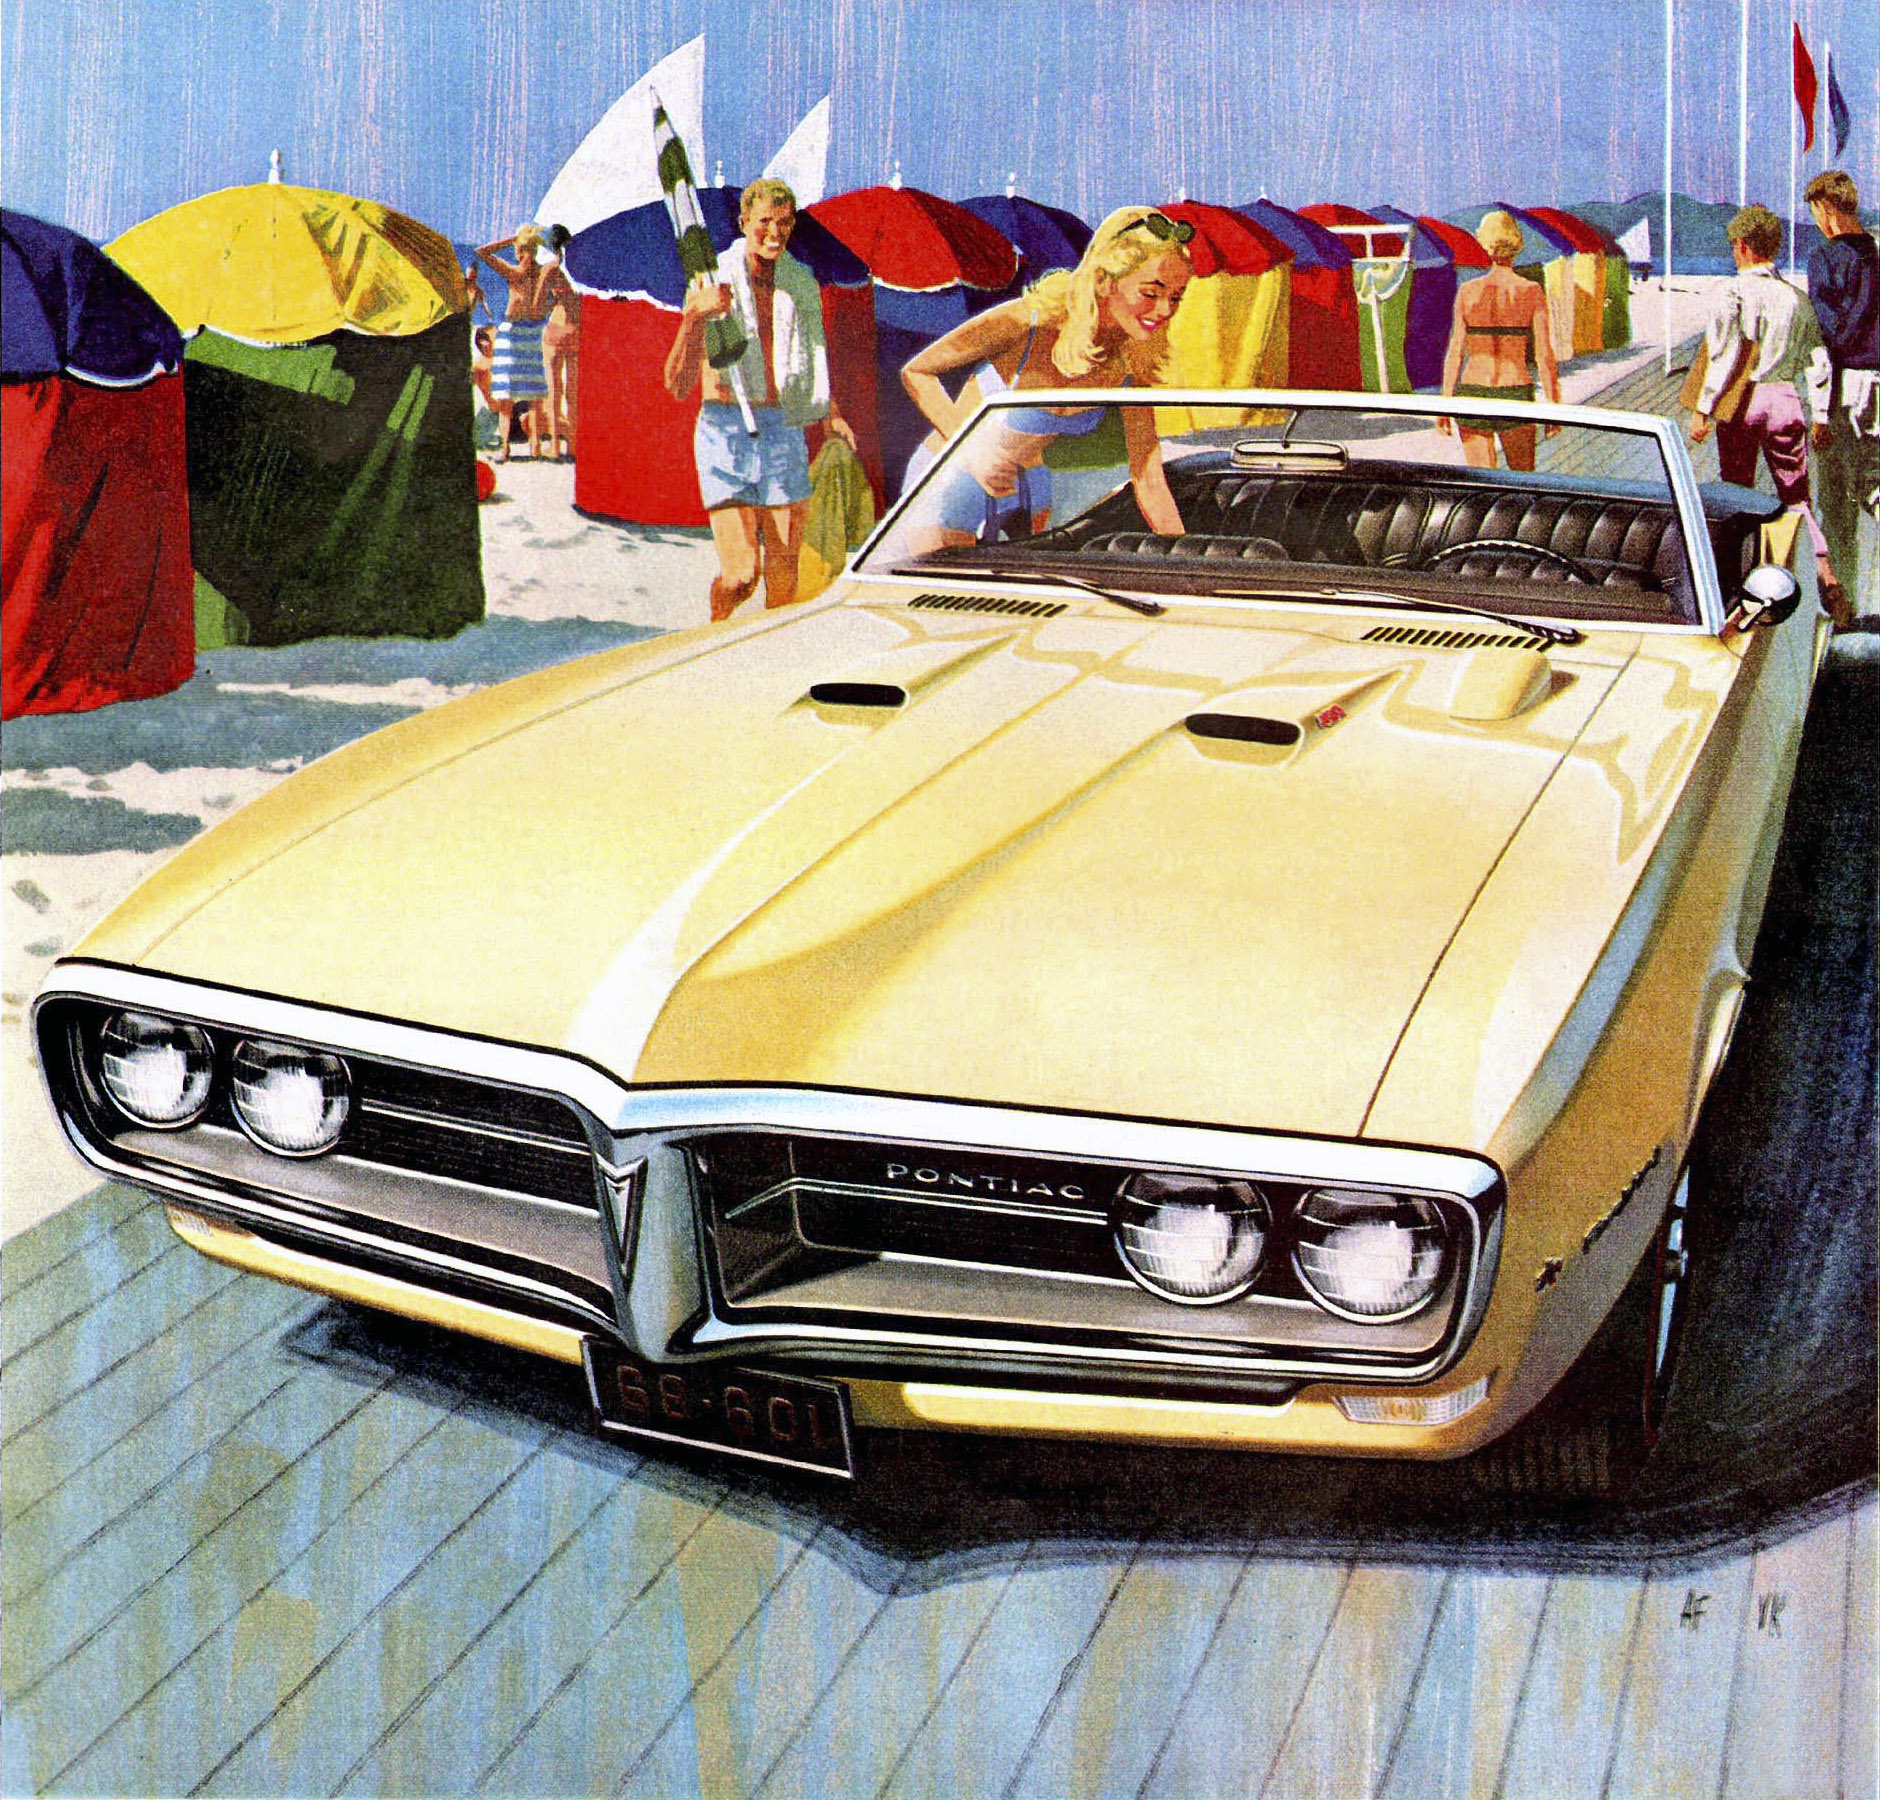 1968 Pontiac Firebird Convertible - 'Deauville': Art Fitzpatrick and Van Kaufman